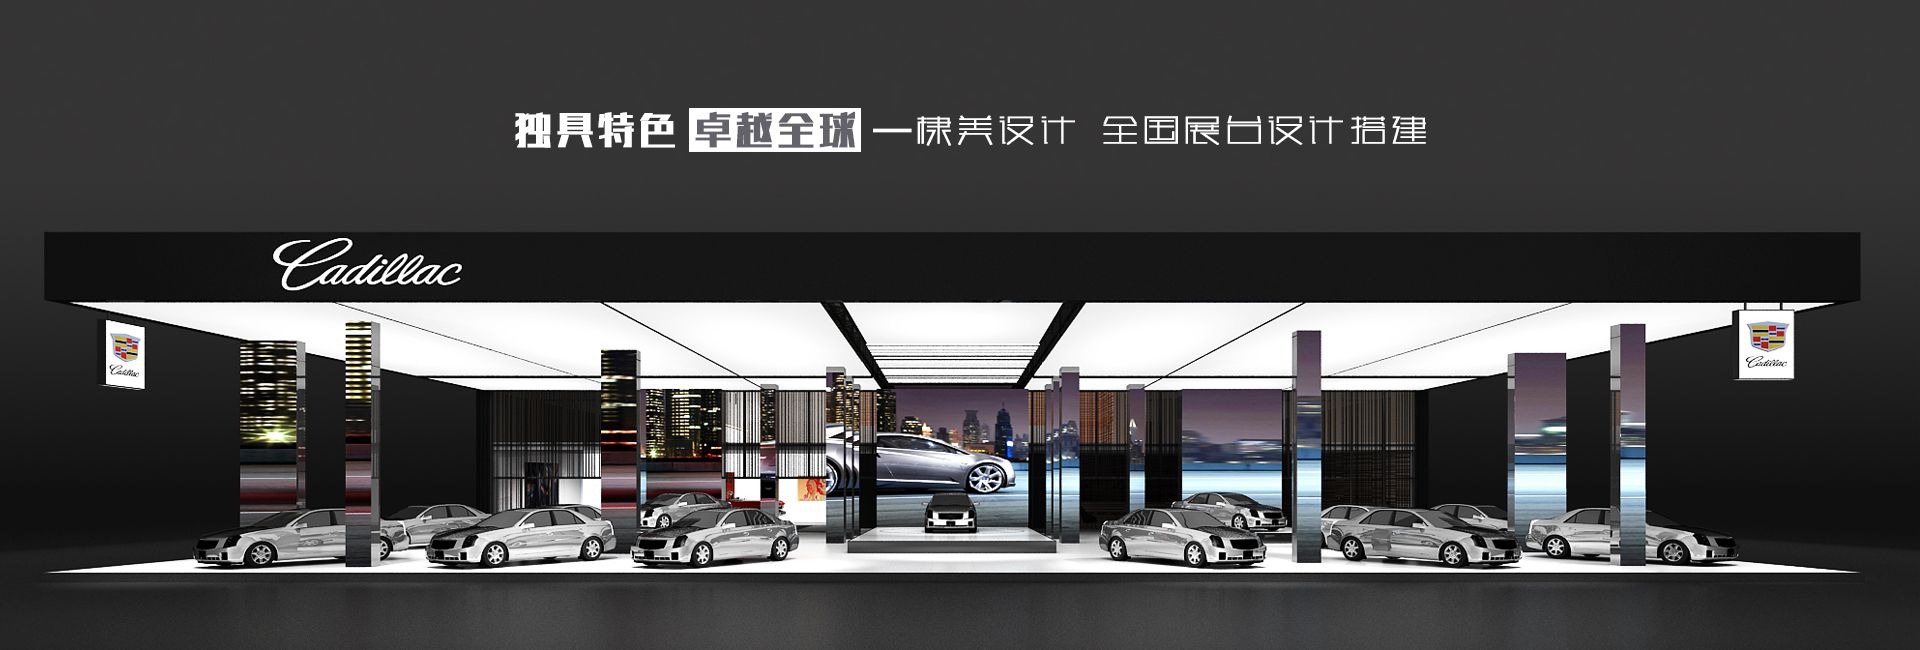 企业展厅设计装修公司-上海展会展台设计搭建-展馆展览展示制作